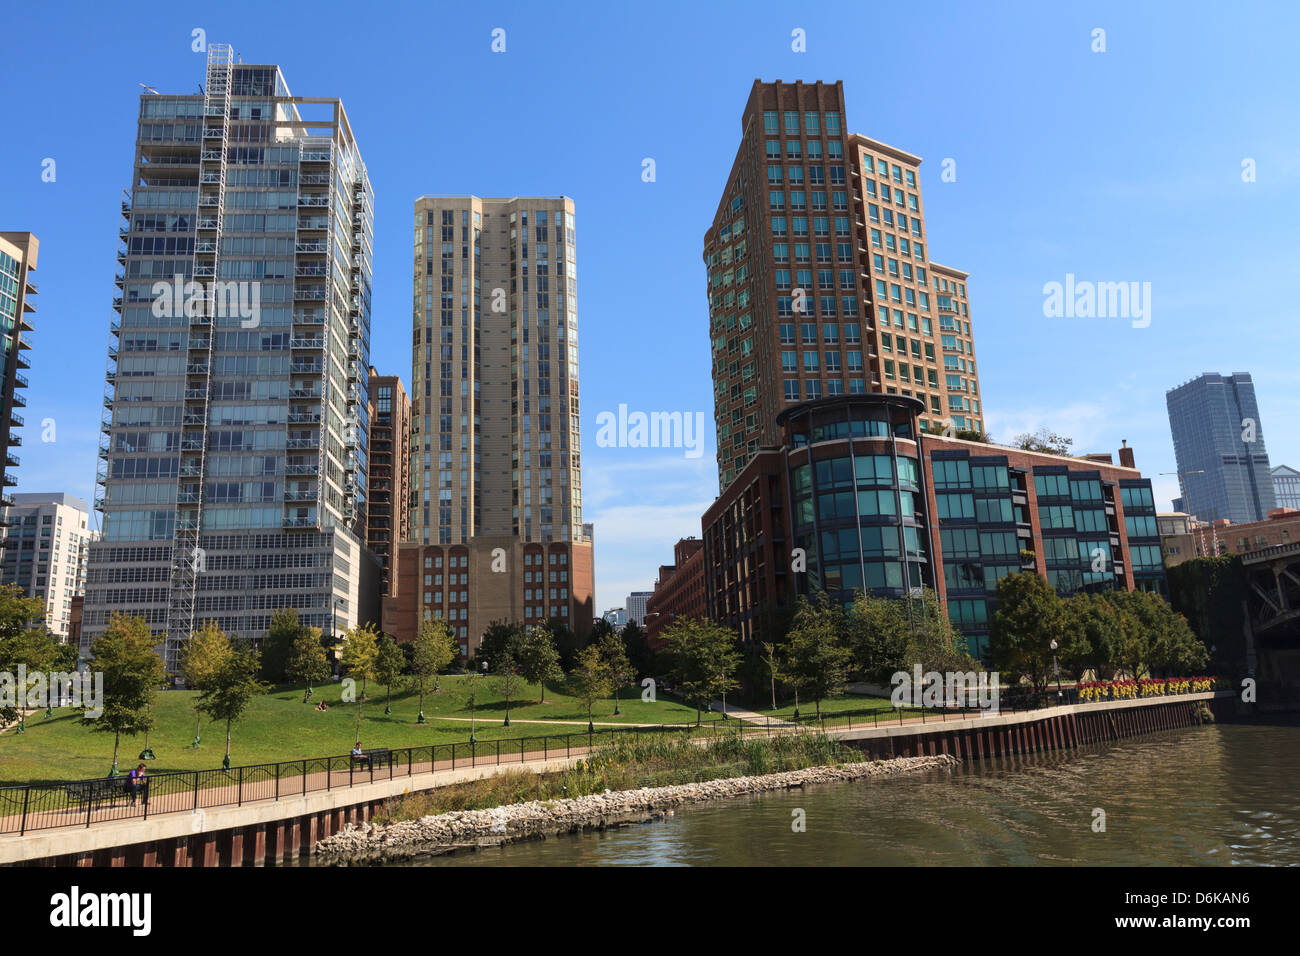 Cher les immeubles à appartements sur la rivière Chicago, Chicago, Illinois, États-Unis d'Amérique, Amérique du Nord Banque D'Images